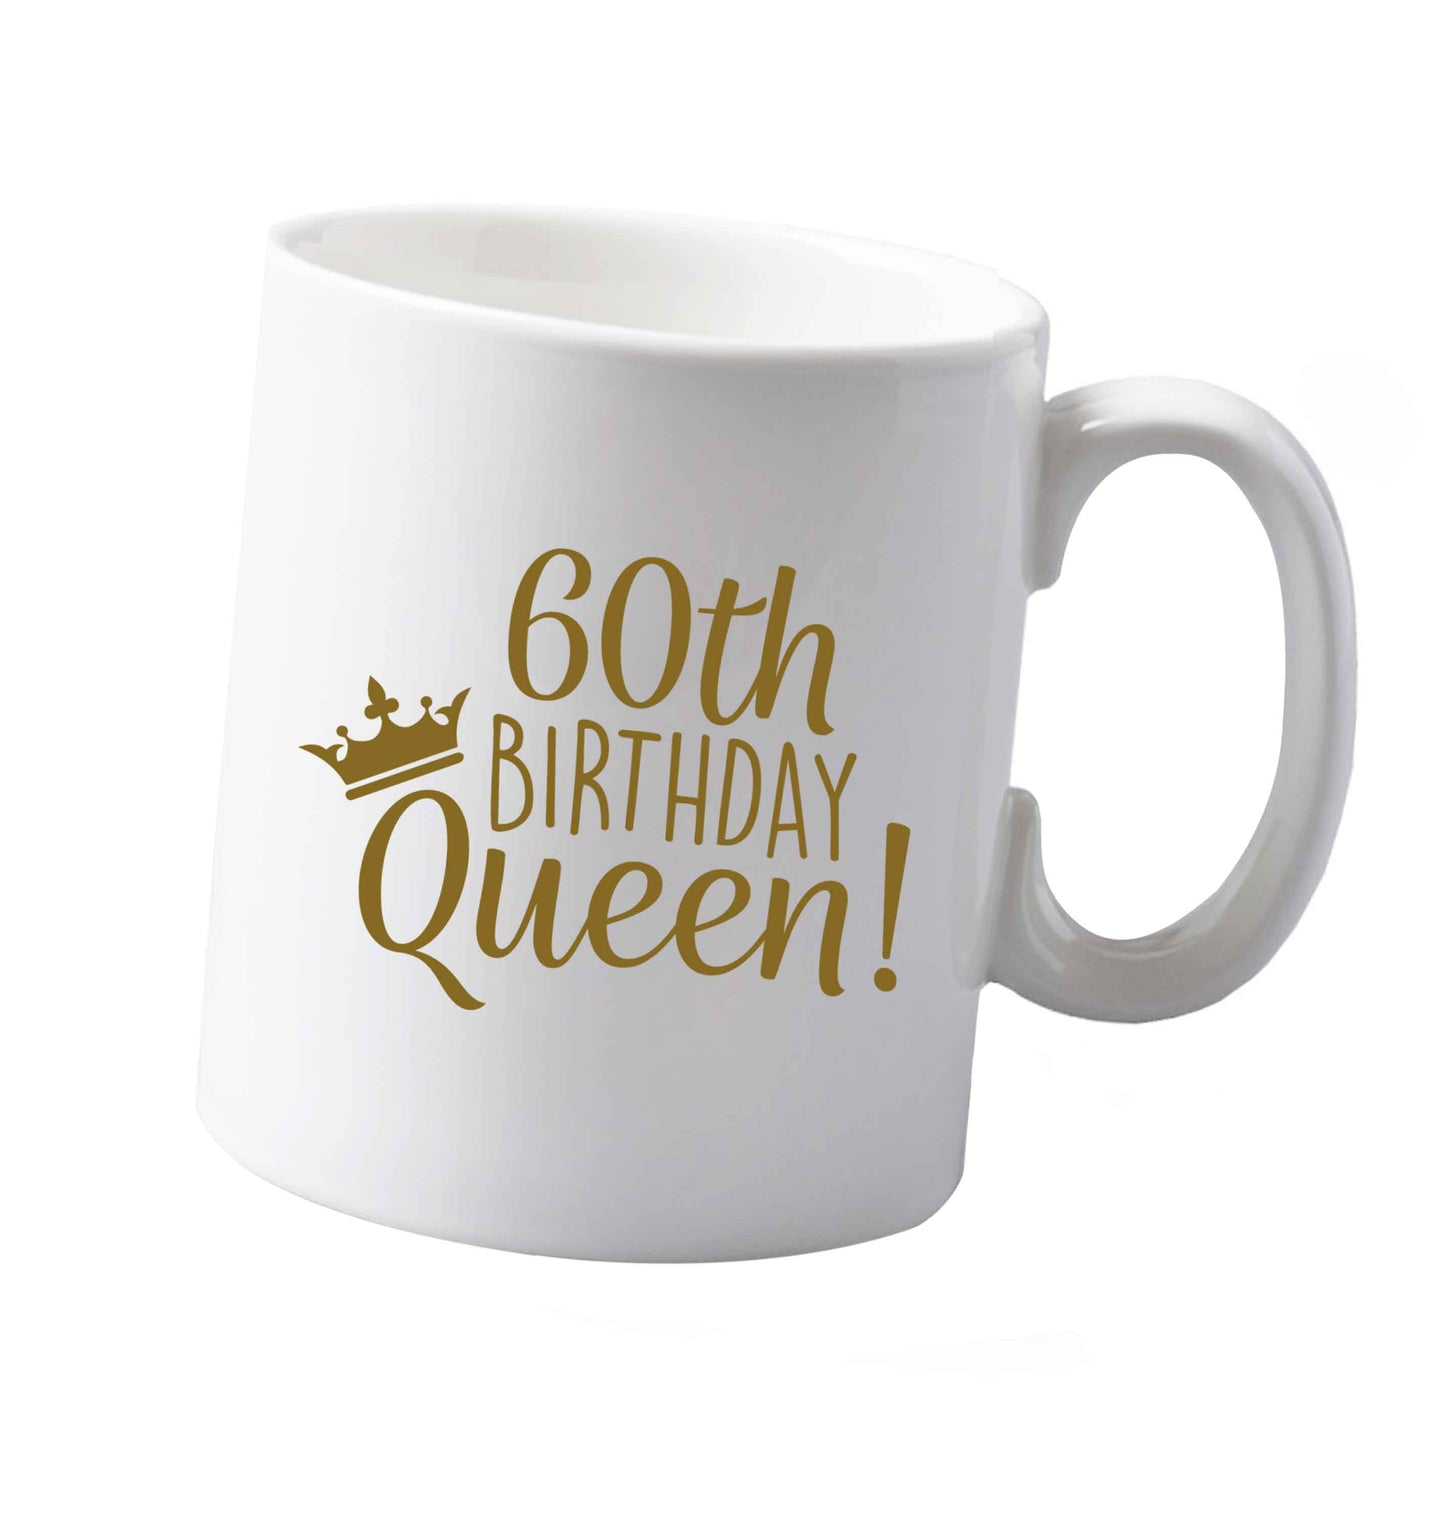 10 oz 60th birthday Queen ceramic mug both sides